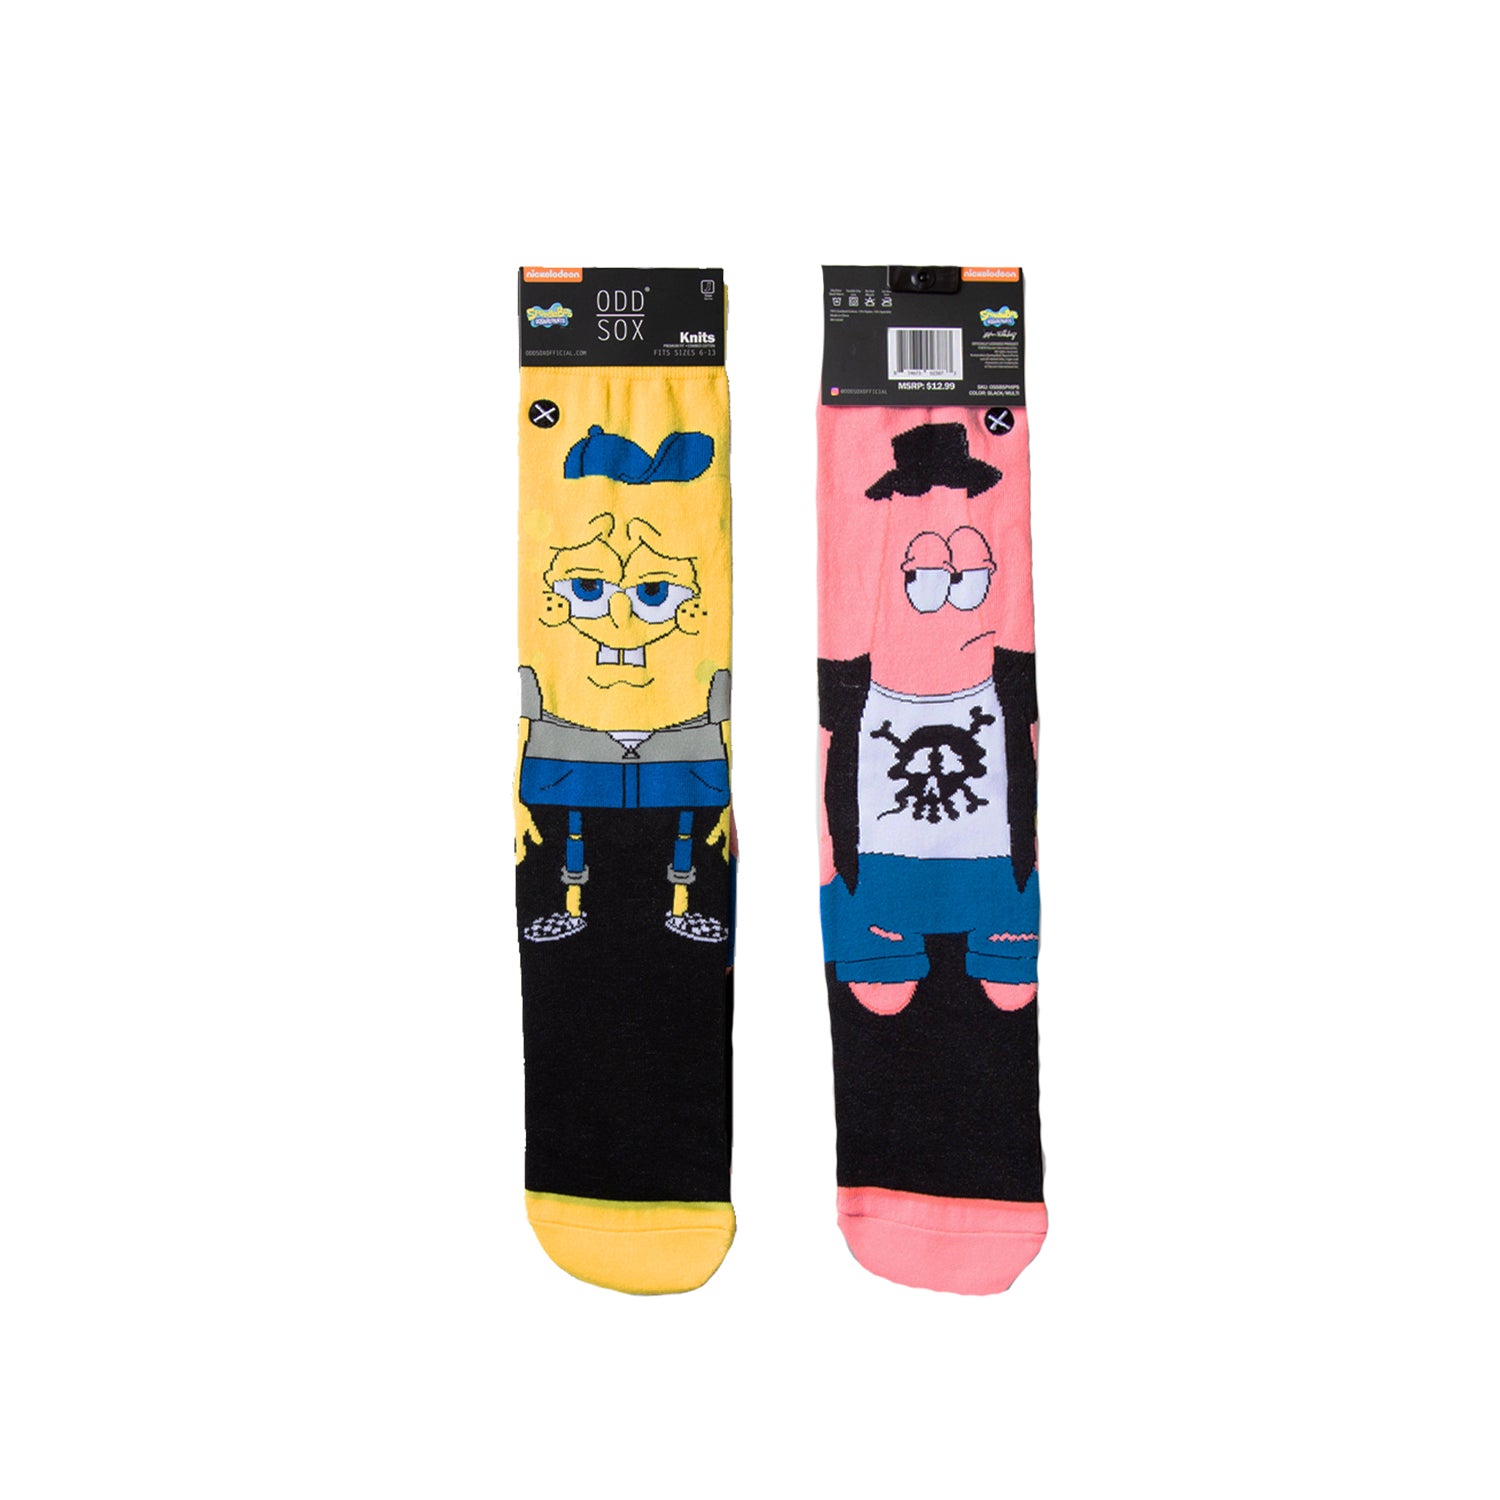 Odd Sox Socks - E.T. Escape (Unisex) – Super Fat Laces and Socks